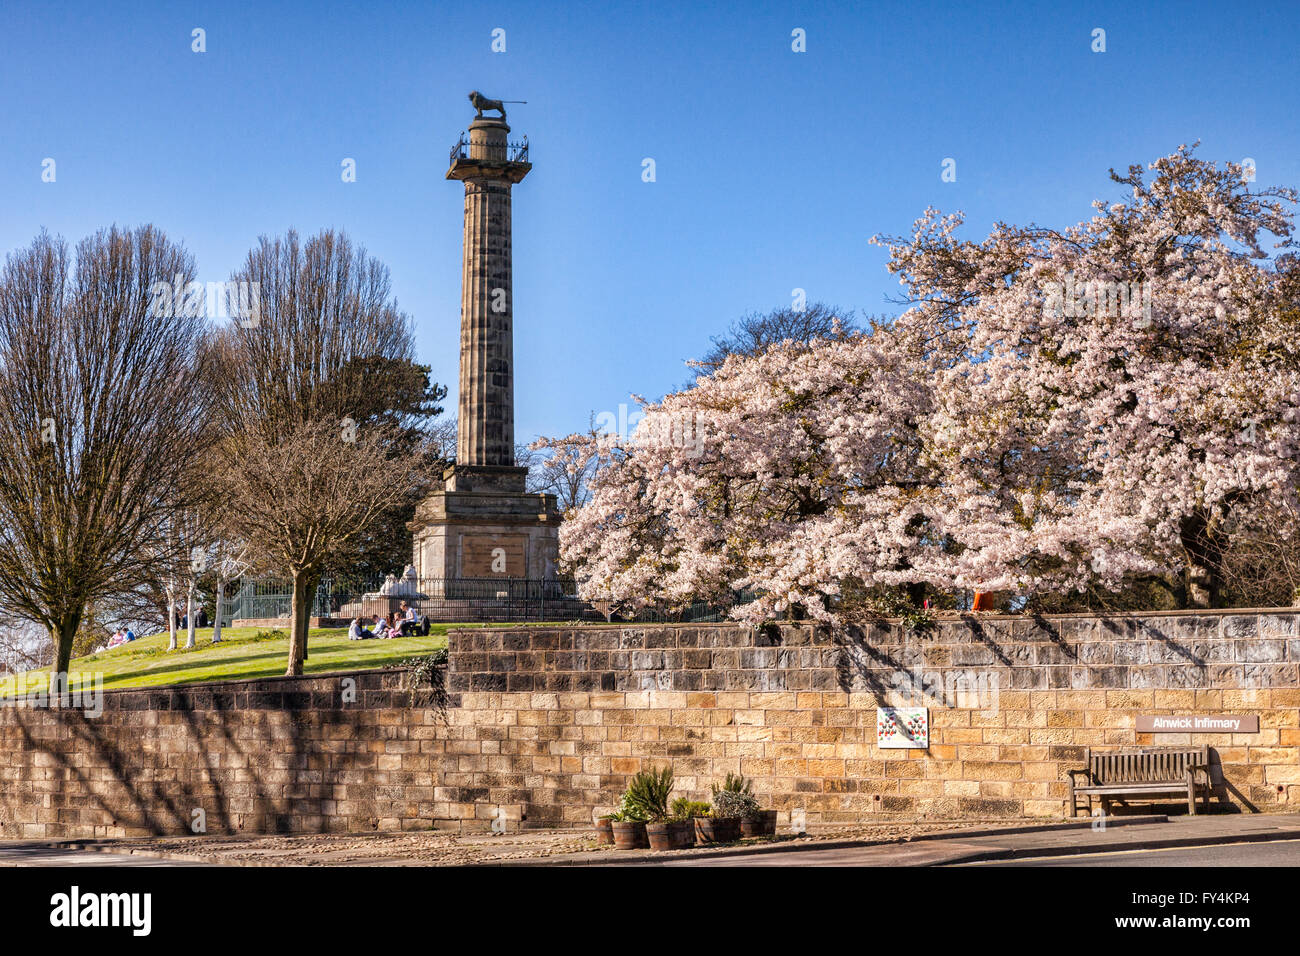 Duke of Northumberland Memorial and flowering cherry trees, Alnwick, Northumberland, England, UK Stock Photo